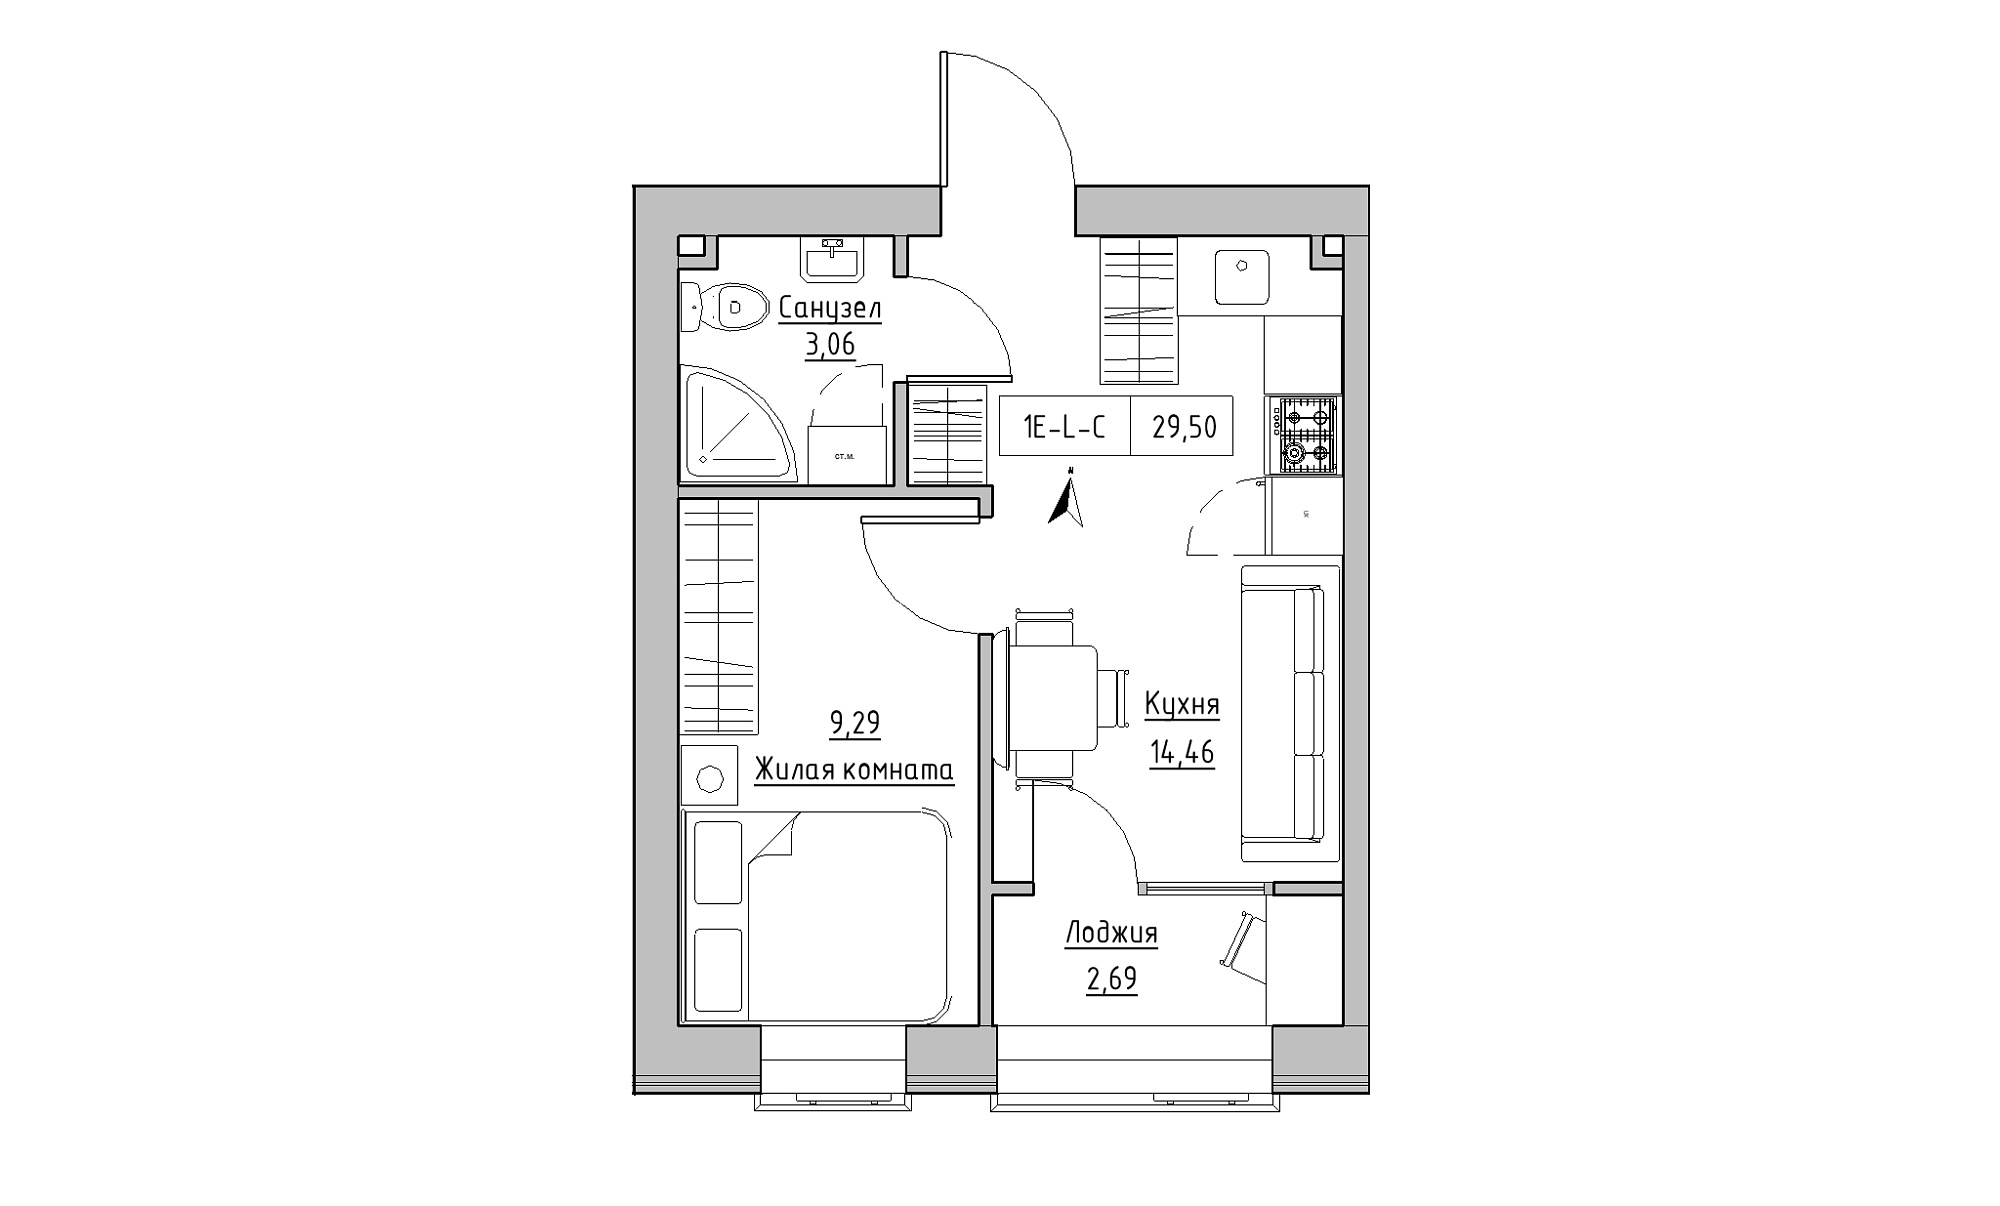 Планировка 1-к квартира площей 29.5м2, KS-023-04/0011.